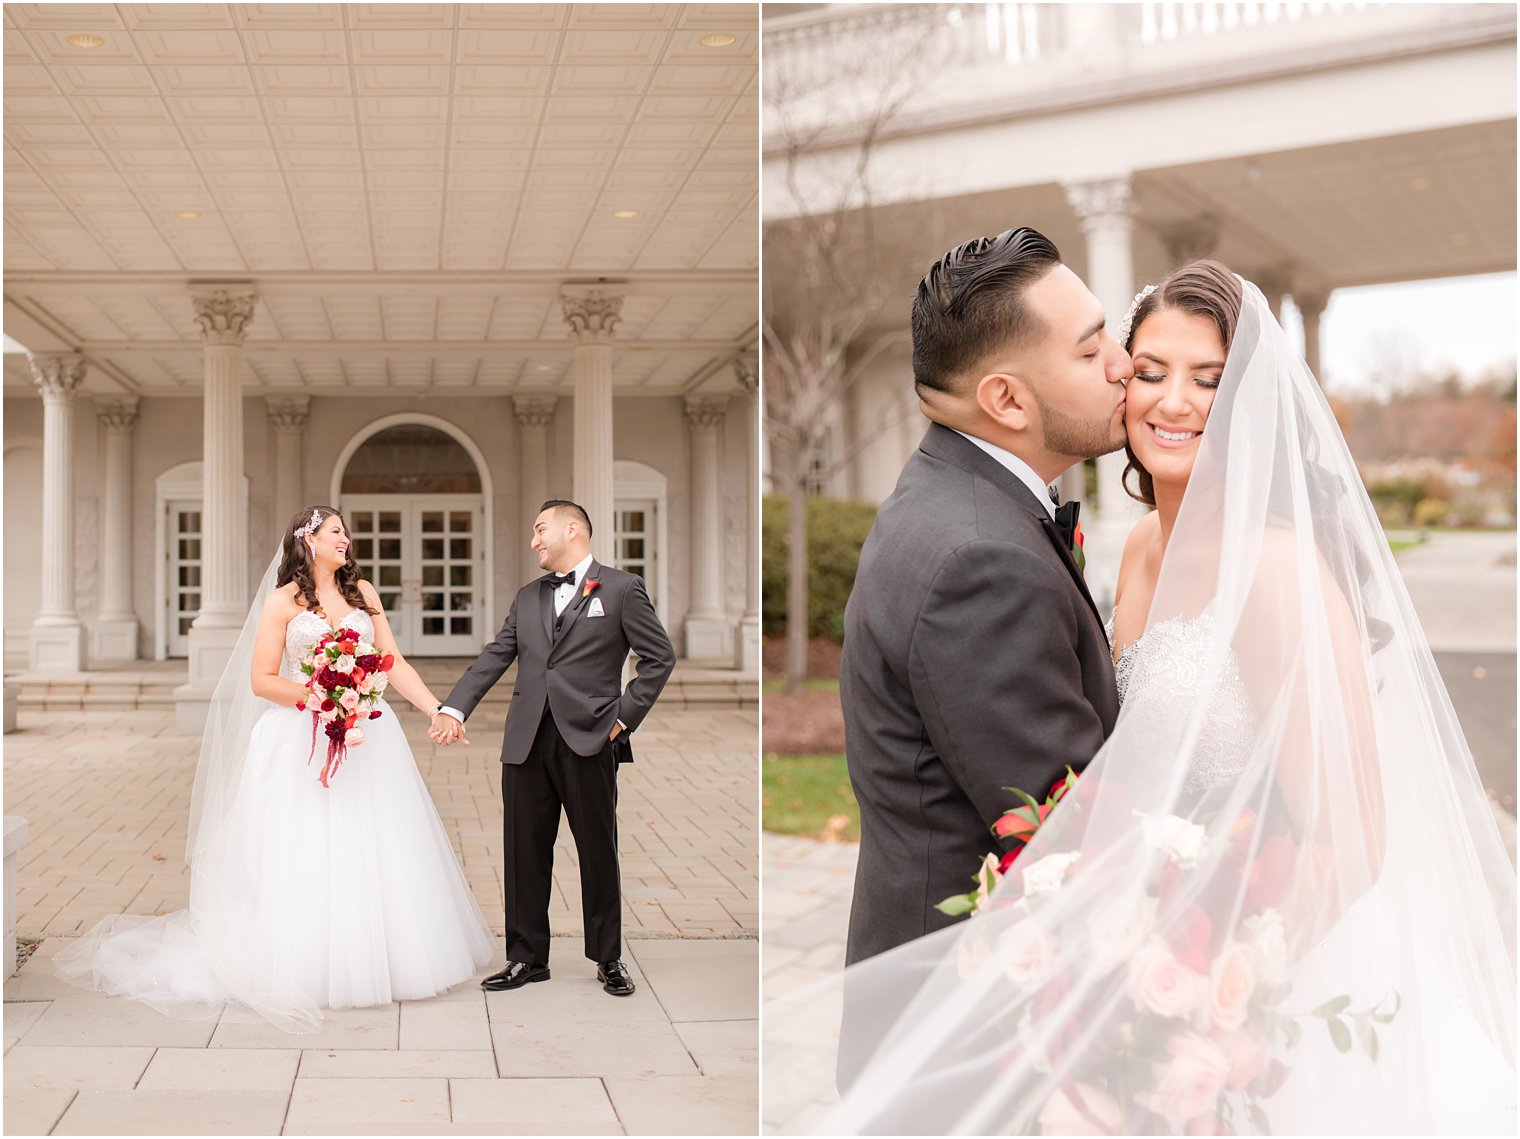 Idalia Photography captures Somerset NJ wedding day